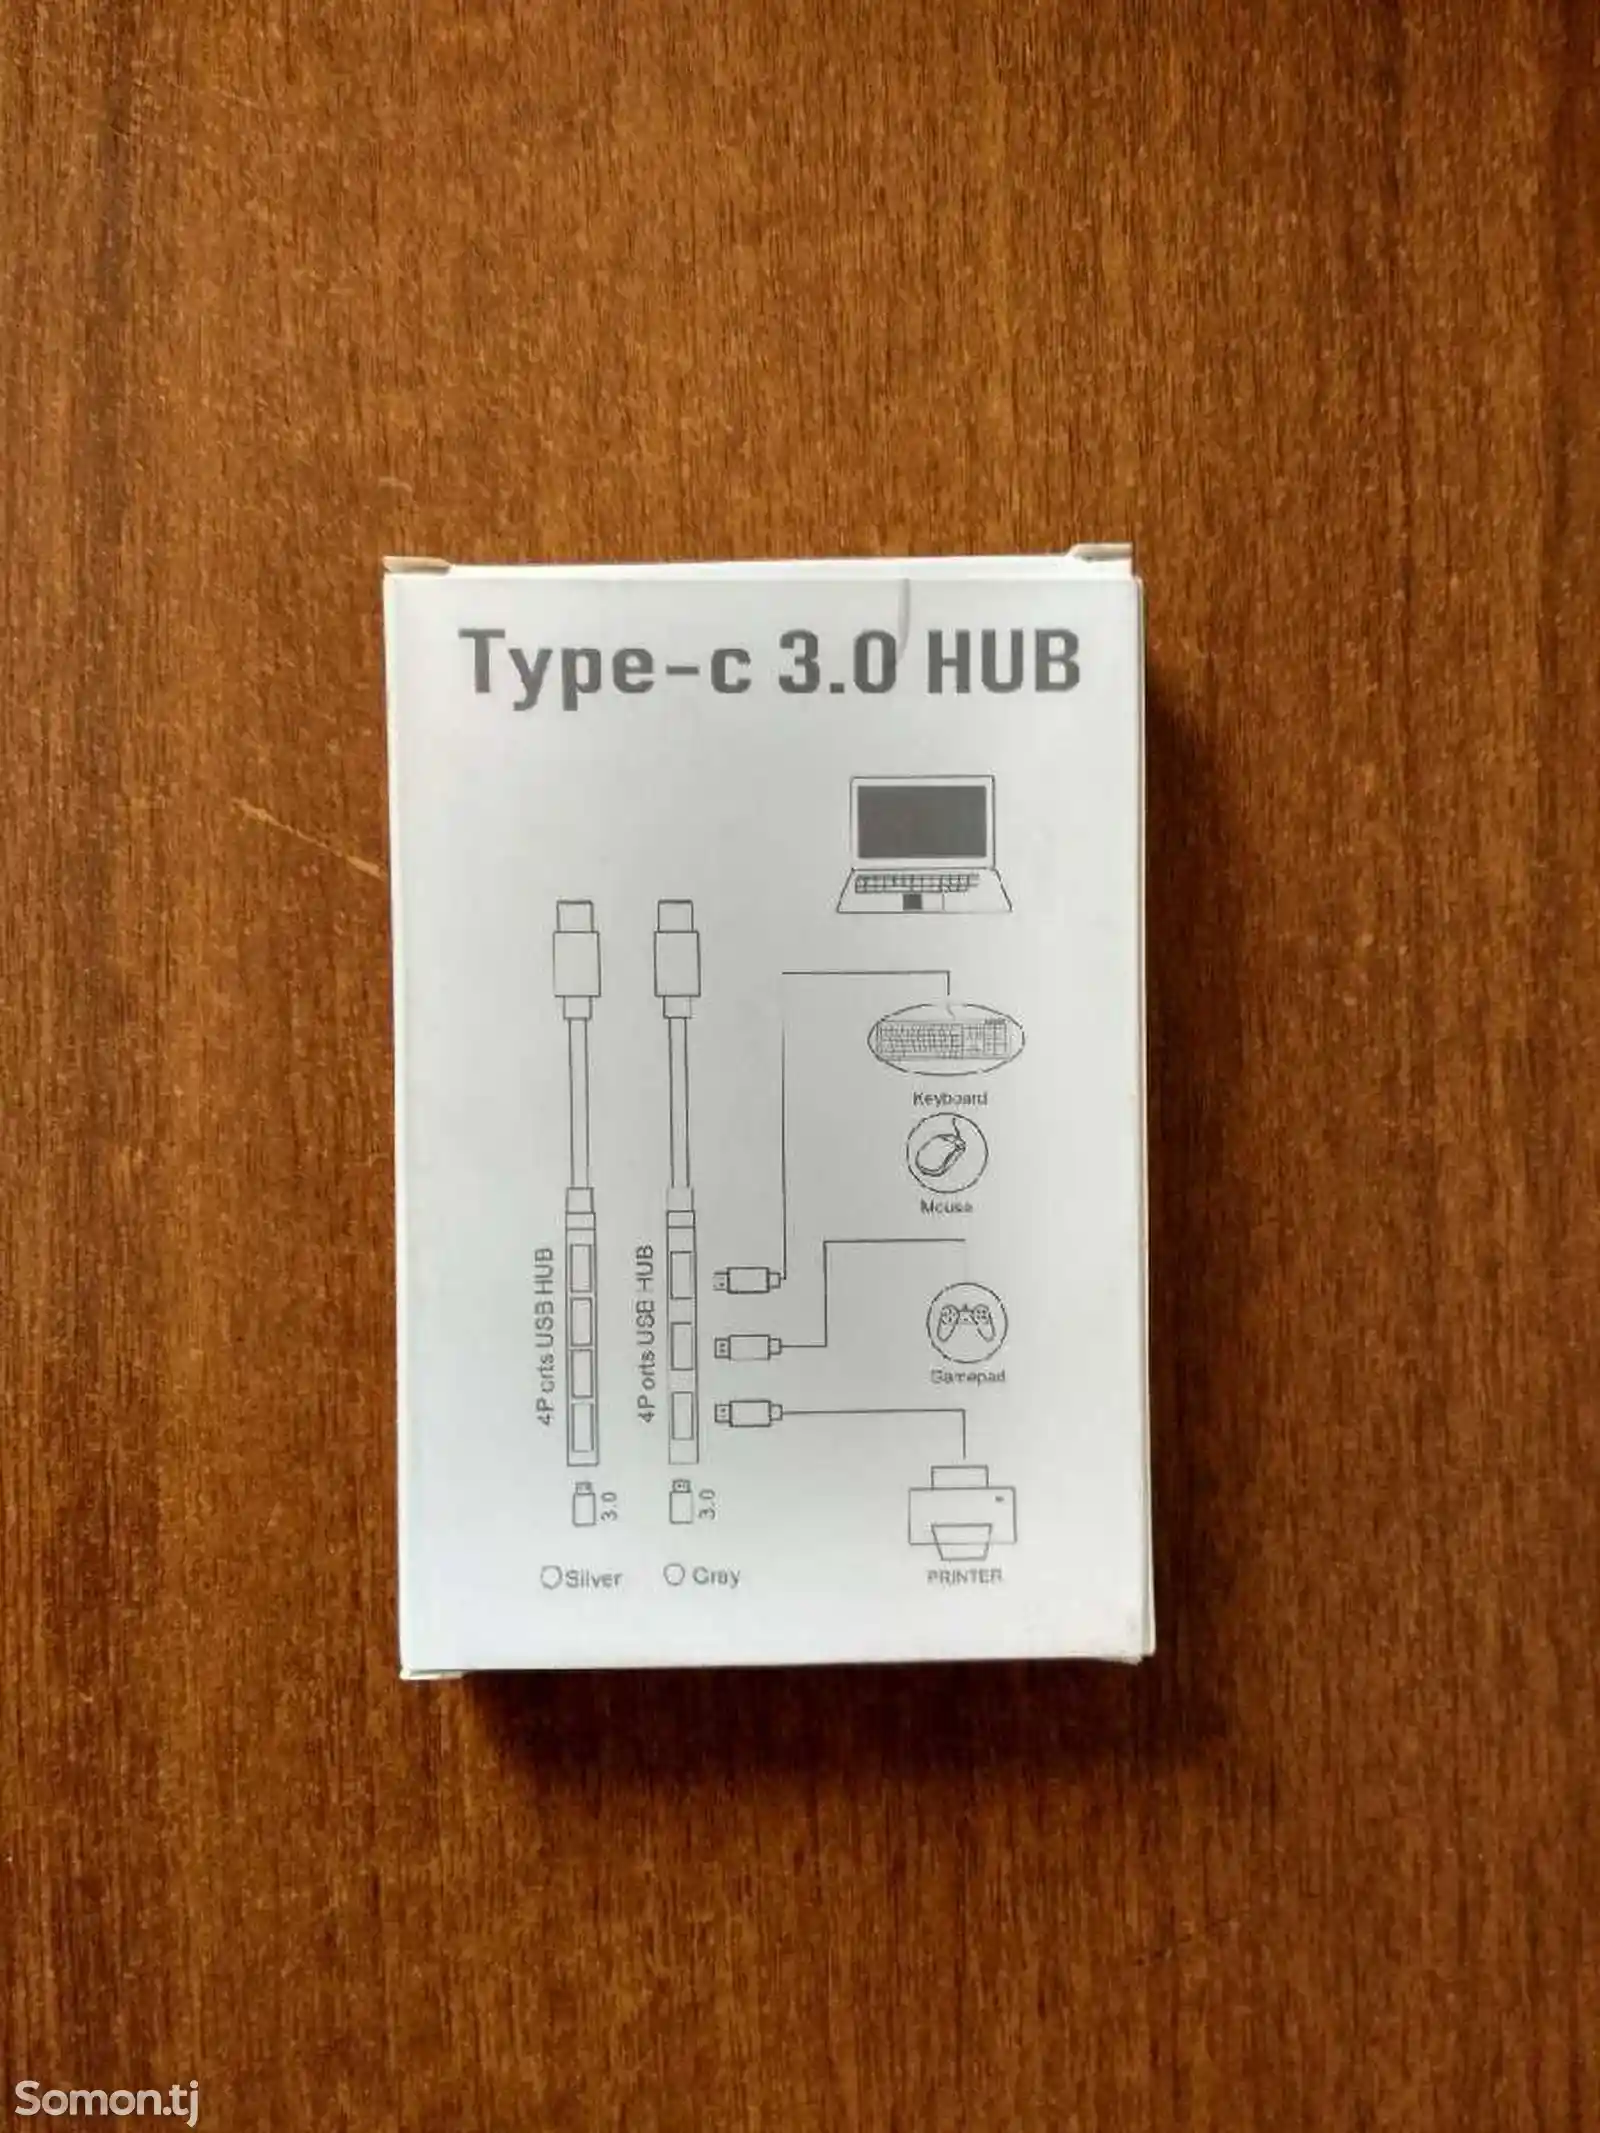 Четырех портовый хаб Type-c 3.0 Hub-2